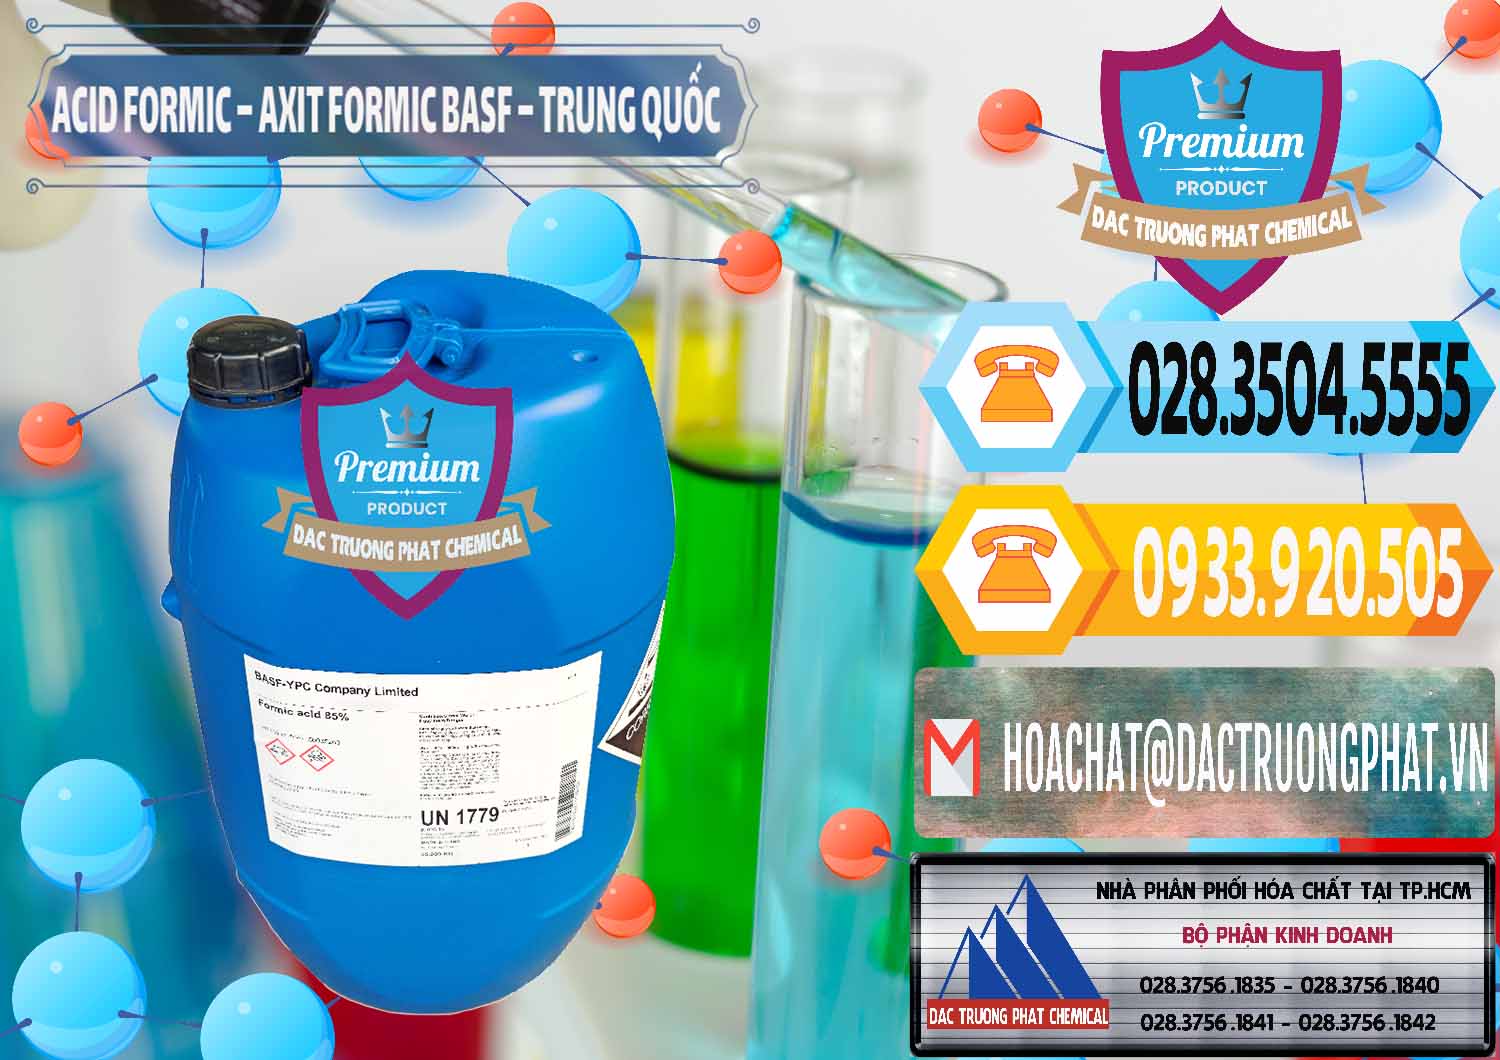 Bán & phân phối Acid Formic - Axit Formic BASF Trung Quốc China - 0025 - Công ty chuyên phân phối - nhập khẩu hóa chất tại TP.HCM - hoachattayrua.net